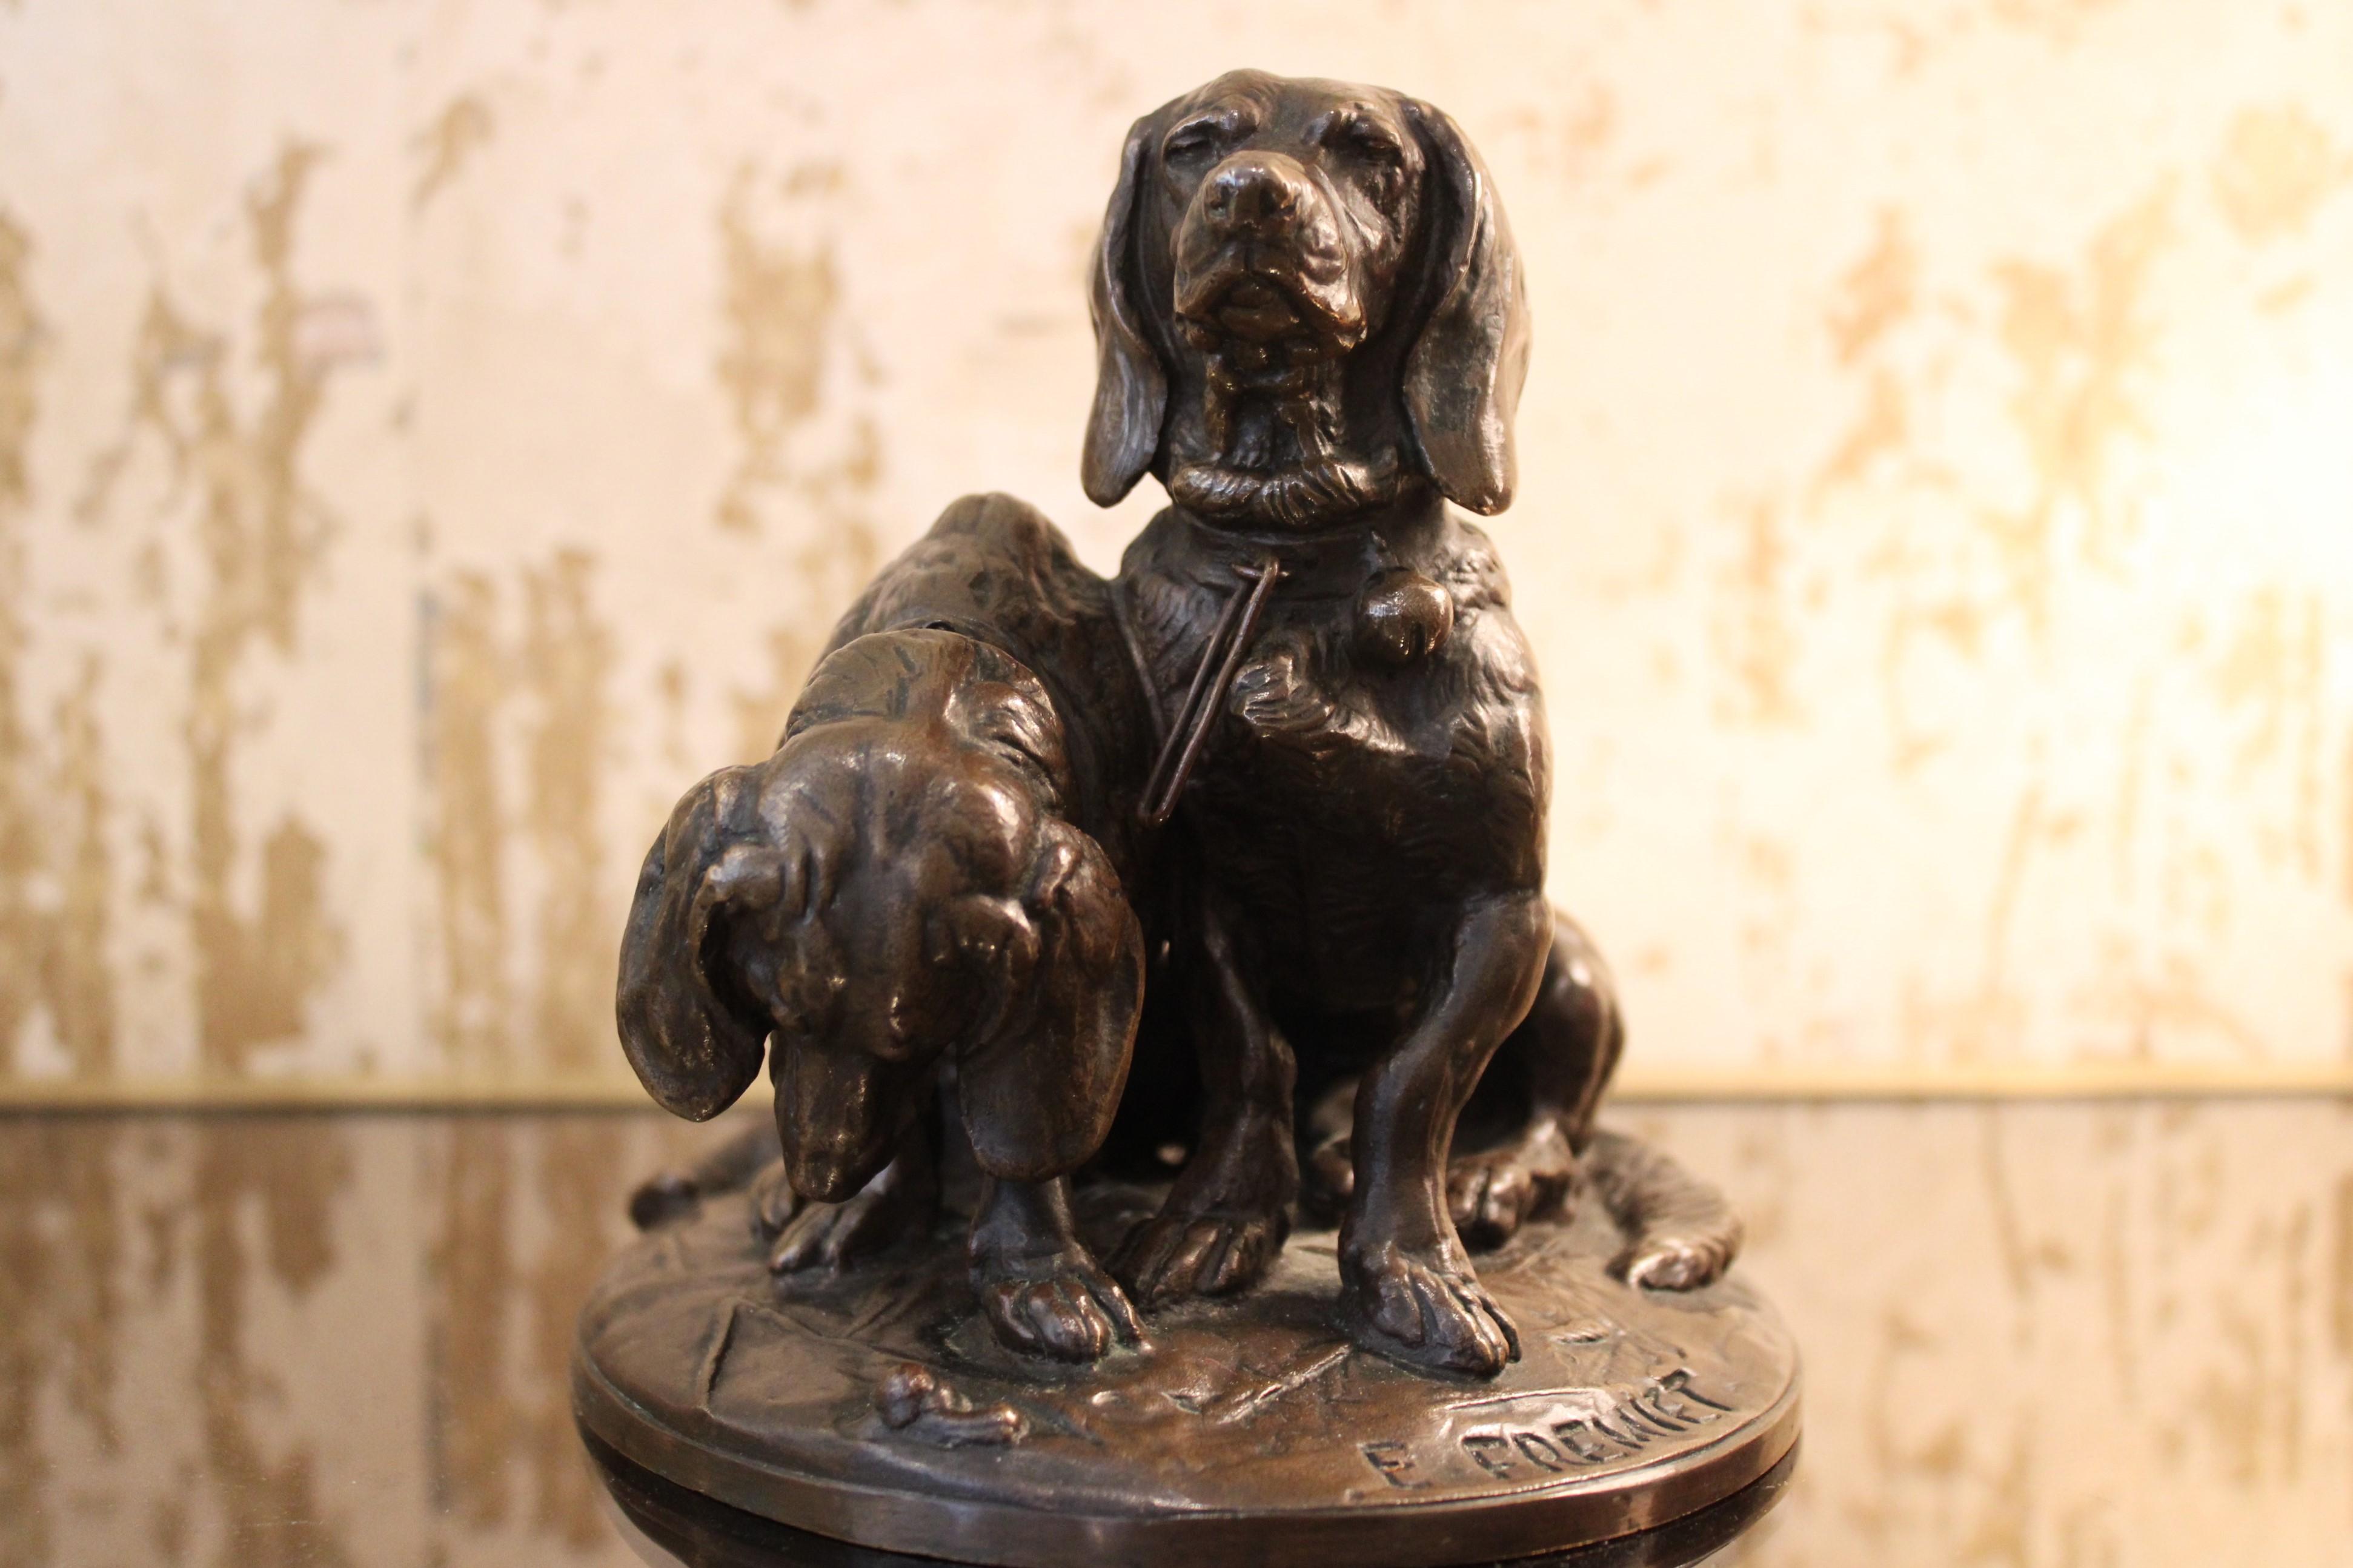 Bronzeskulptur zweier Basset-Hunde (Ravageot et Ravageode) von Emmanuel Frémiet
Unterzeichnet
Frankreich, Anfang 19. Jahrhundert